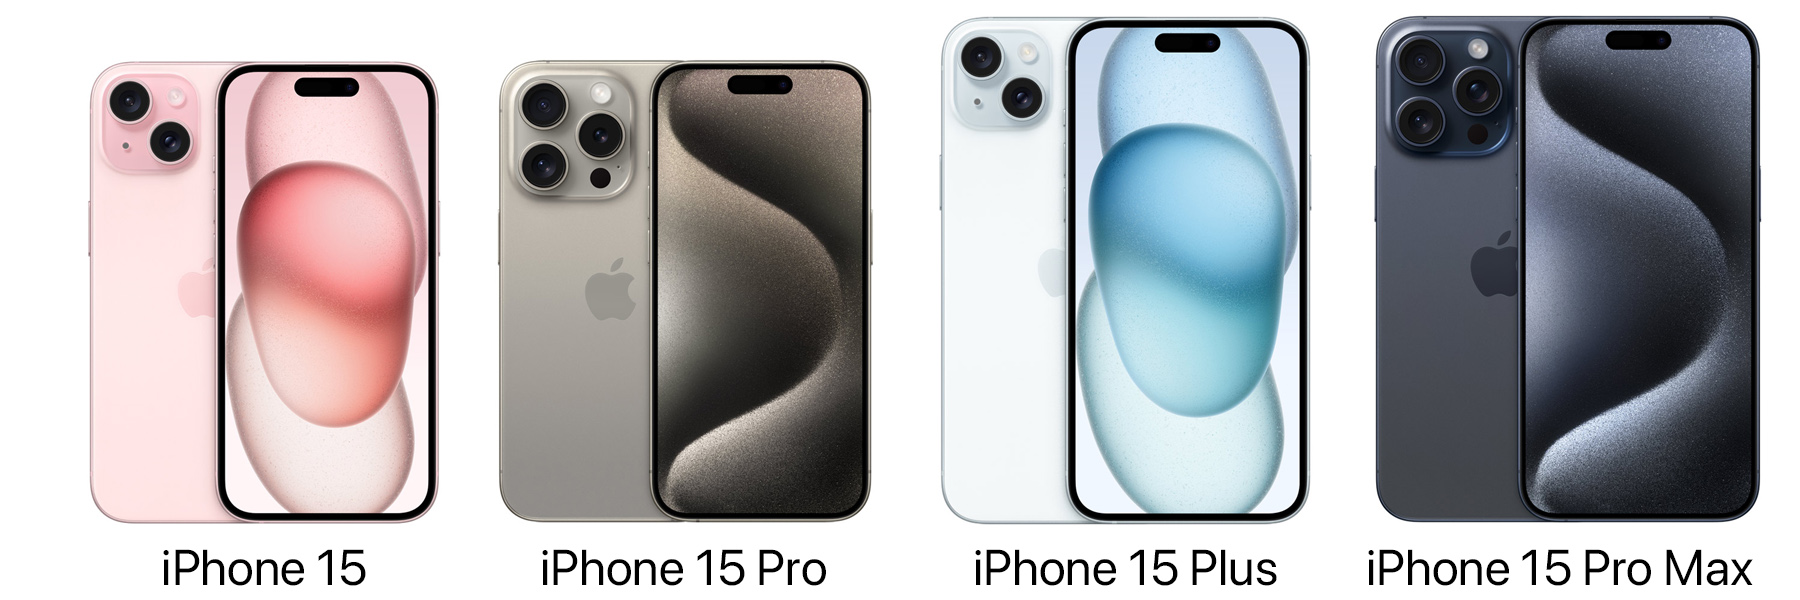 iPhone 15シリーズの大きさを比較